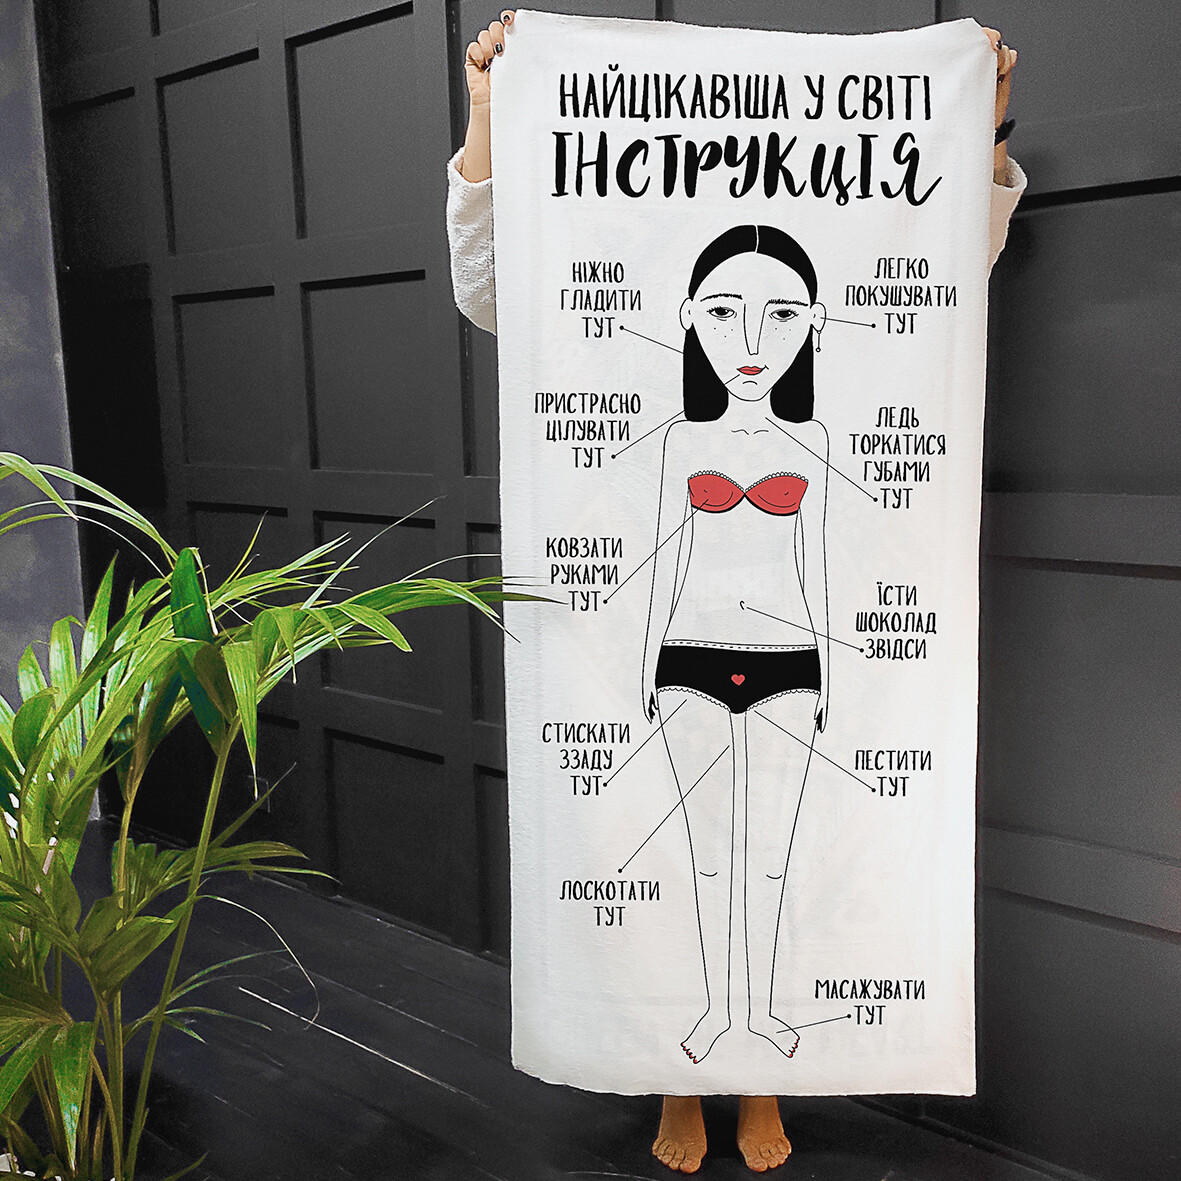 Полотенце пляжное с принтом Найцікавіша у світі інструкція для дівчат, 150х70 см